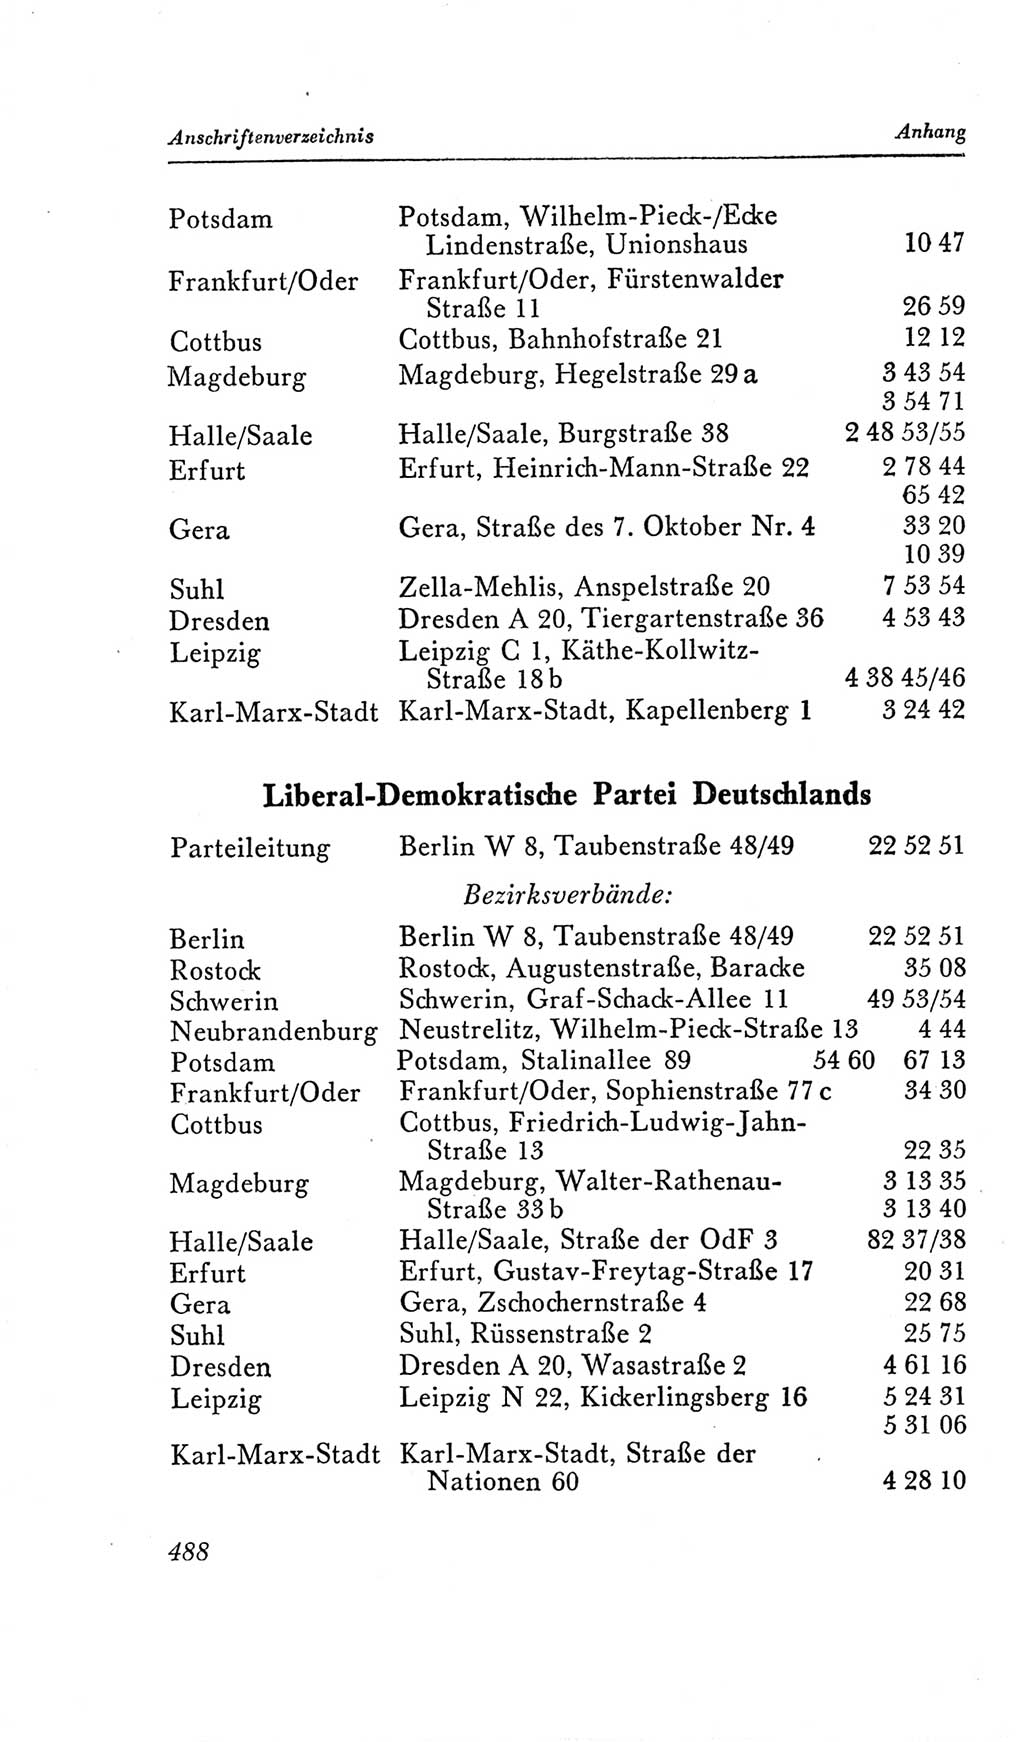 Handbuch der Volkskammer (VK) der Deutschen Demokratischen Republik (DDR), 2. Wahlperiode 1954-1958, Seite 488 (Hdb. VK. DDR, 2. WP. 1954-1958, S. 488)